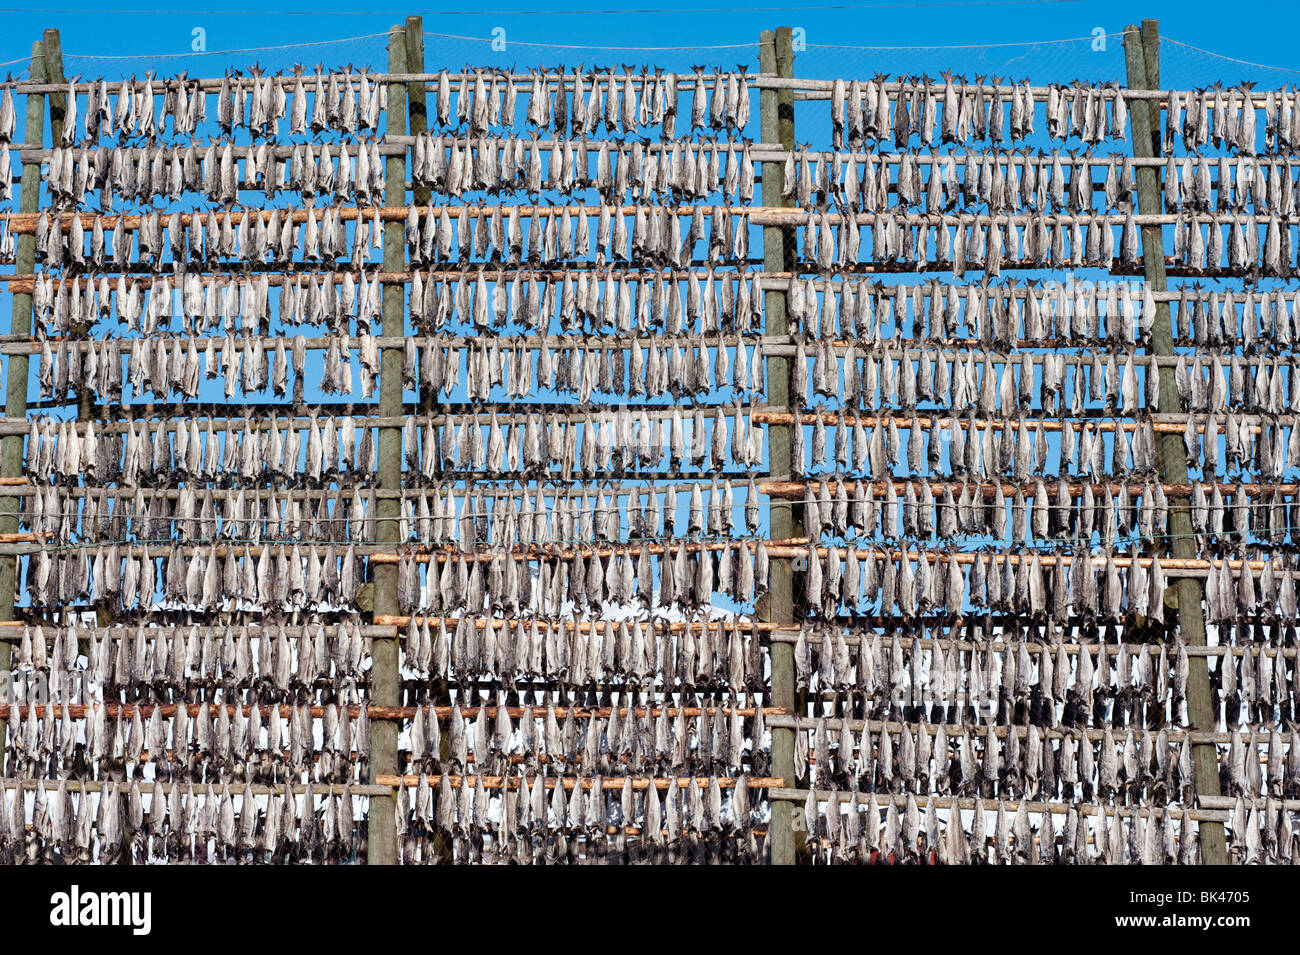 La morue de séchage traditionnel à produire sur une trame de plein air stockfisch racks de Svolvaer dans îles Lofoten en Norvège Banque D'Images